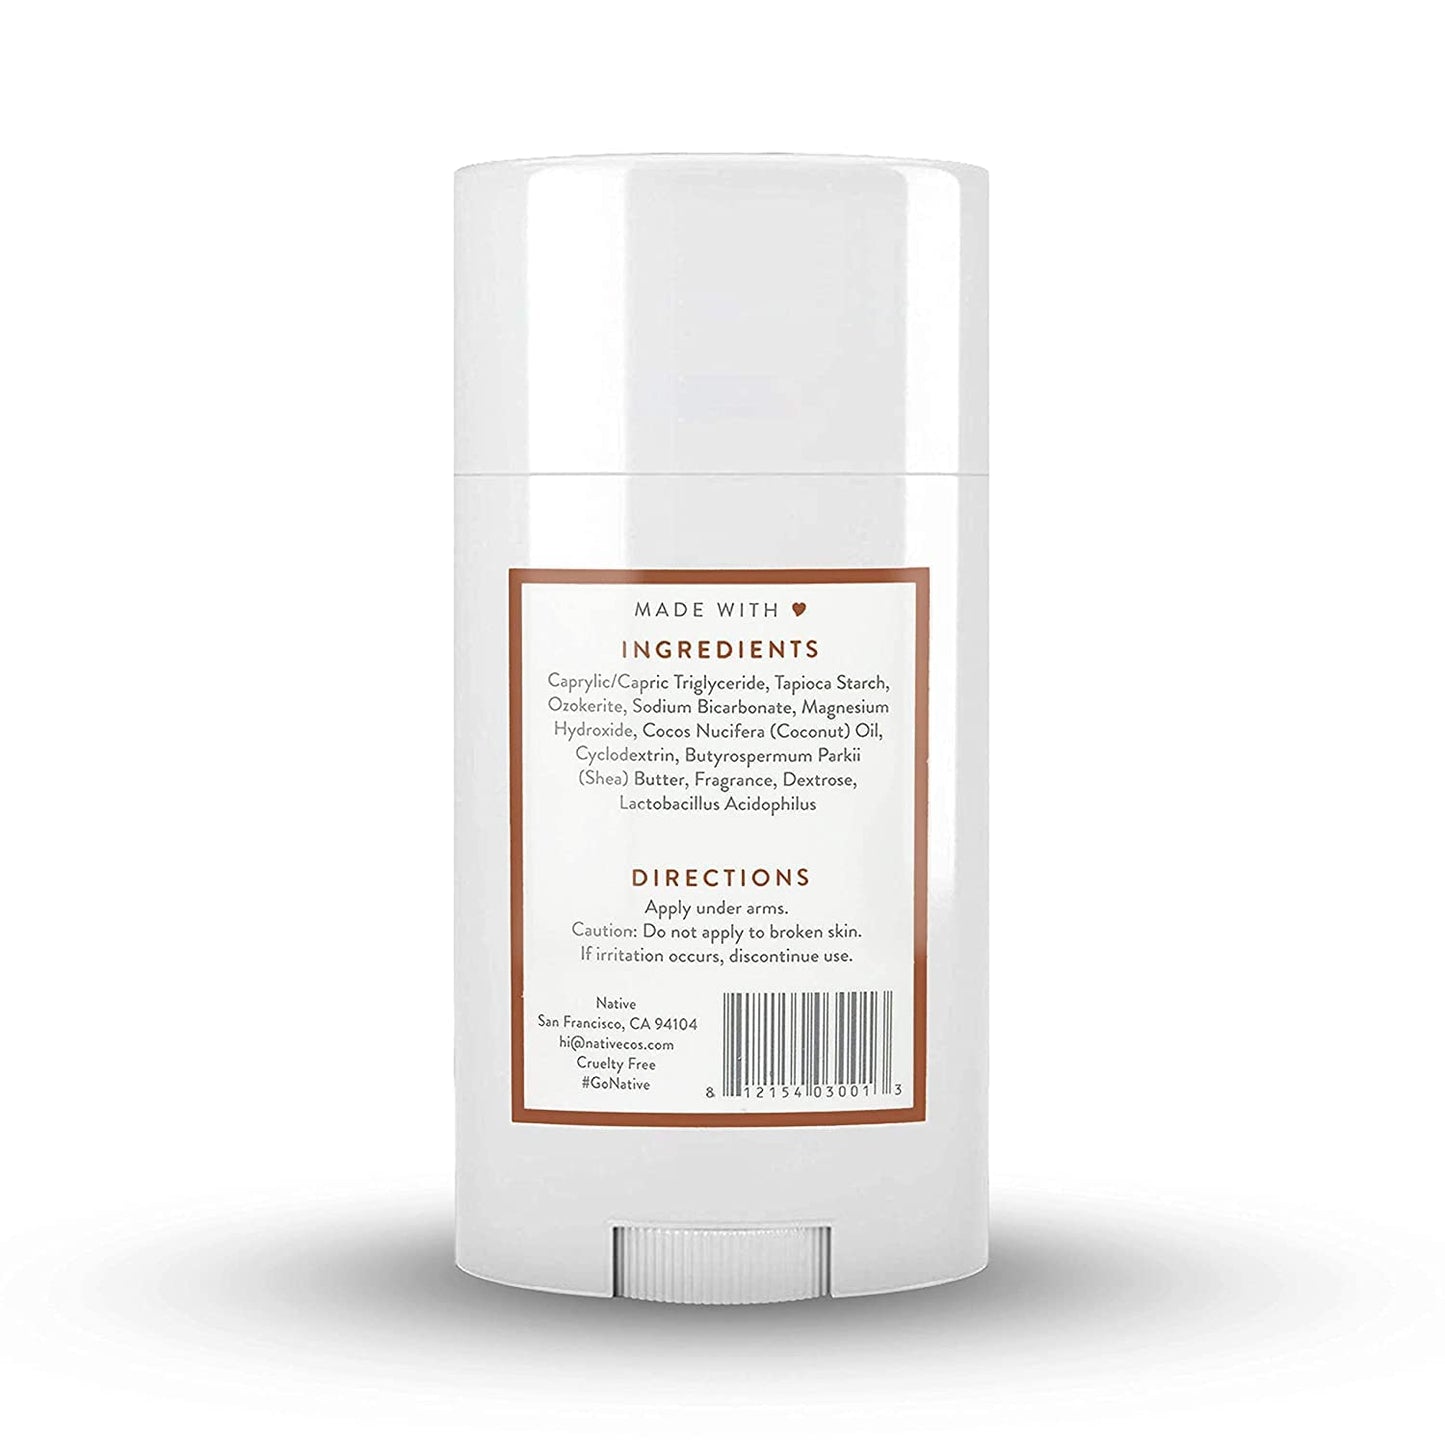 Native Deodorant - Coconut &amp; Vanilla - Aluminum Free - 2.65 oz